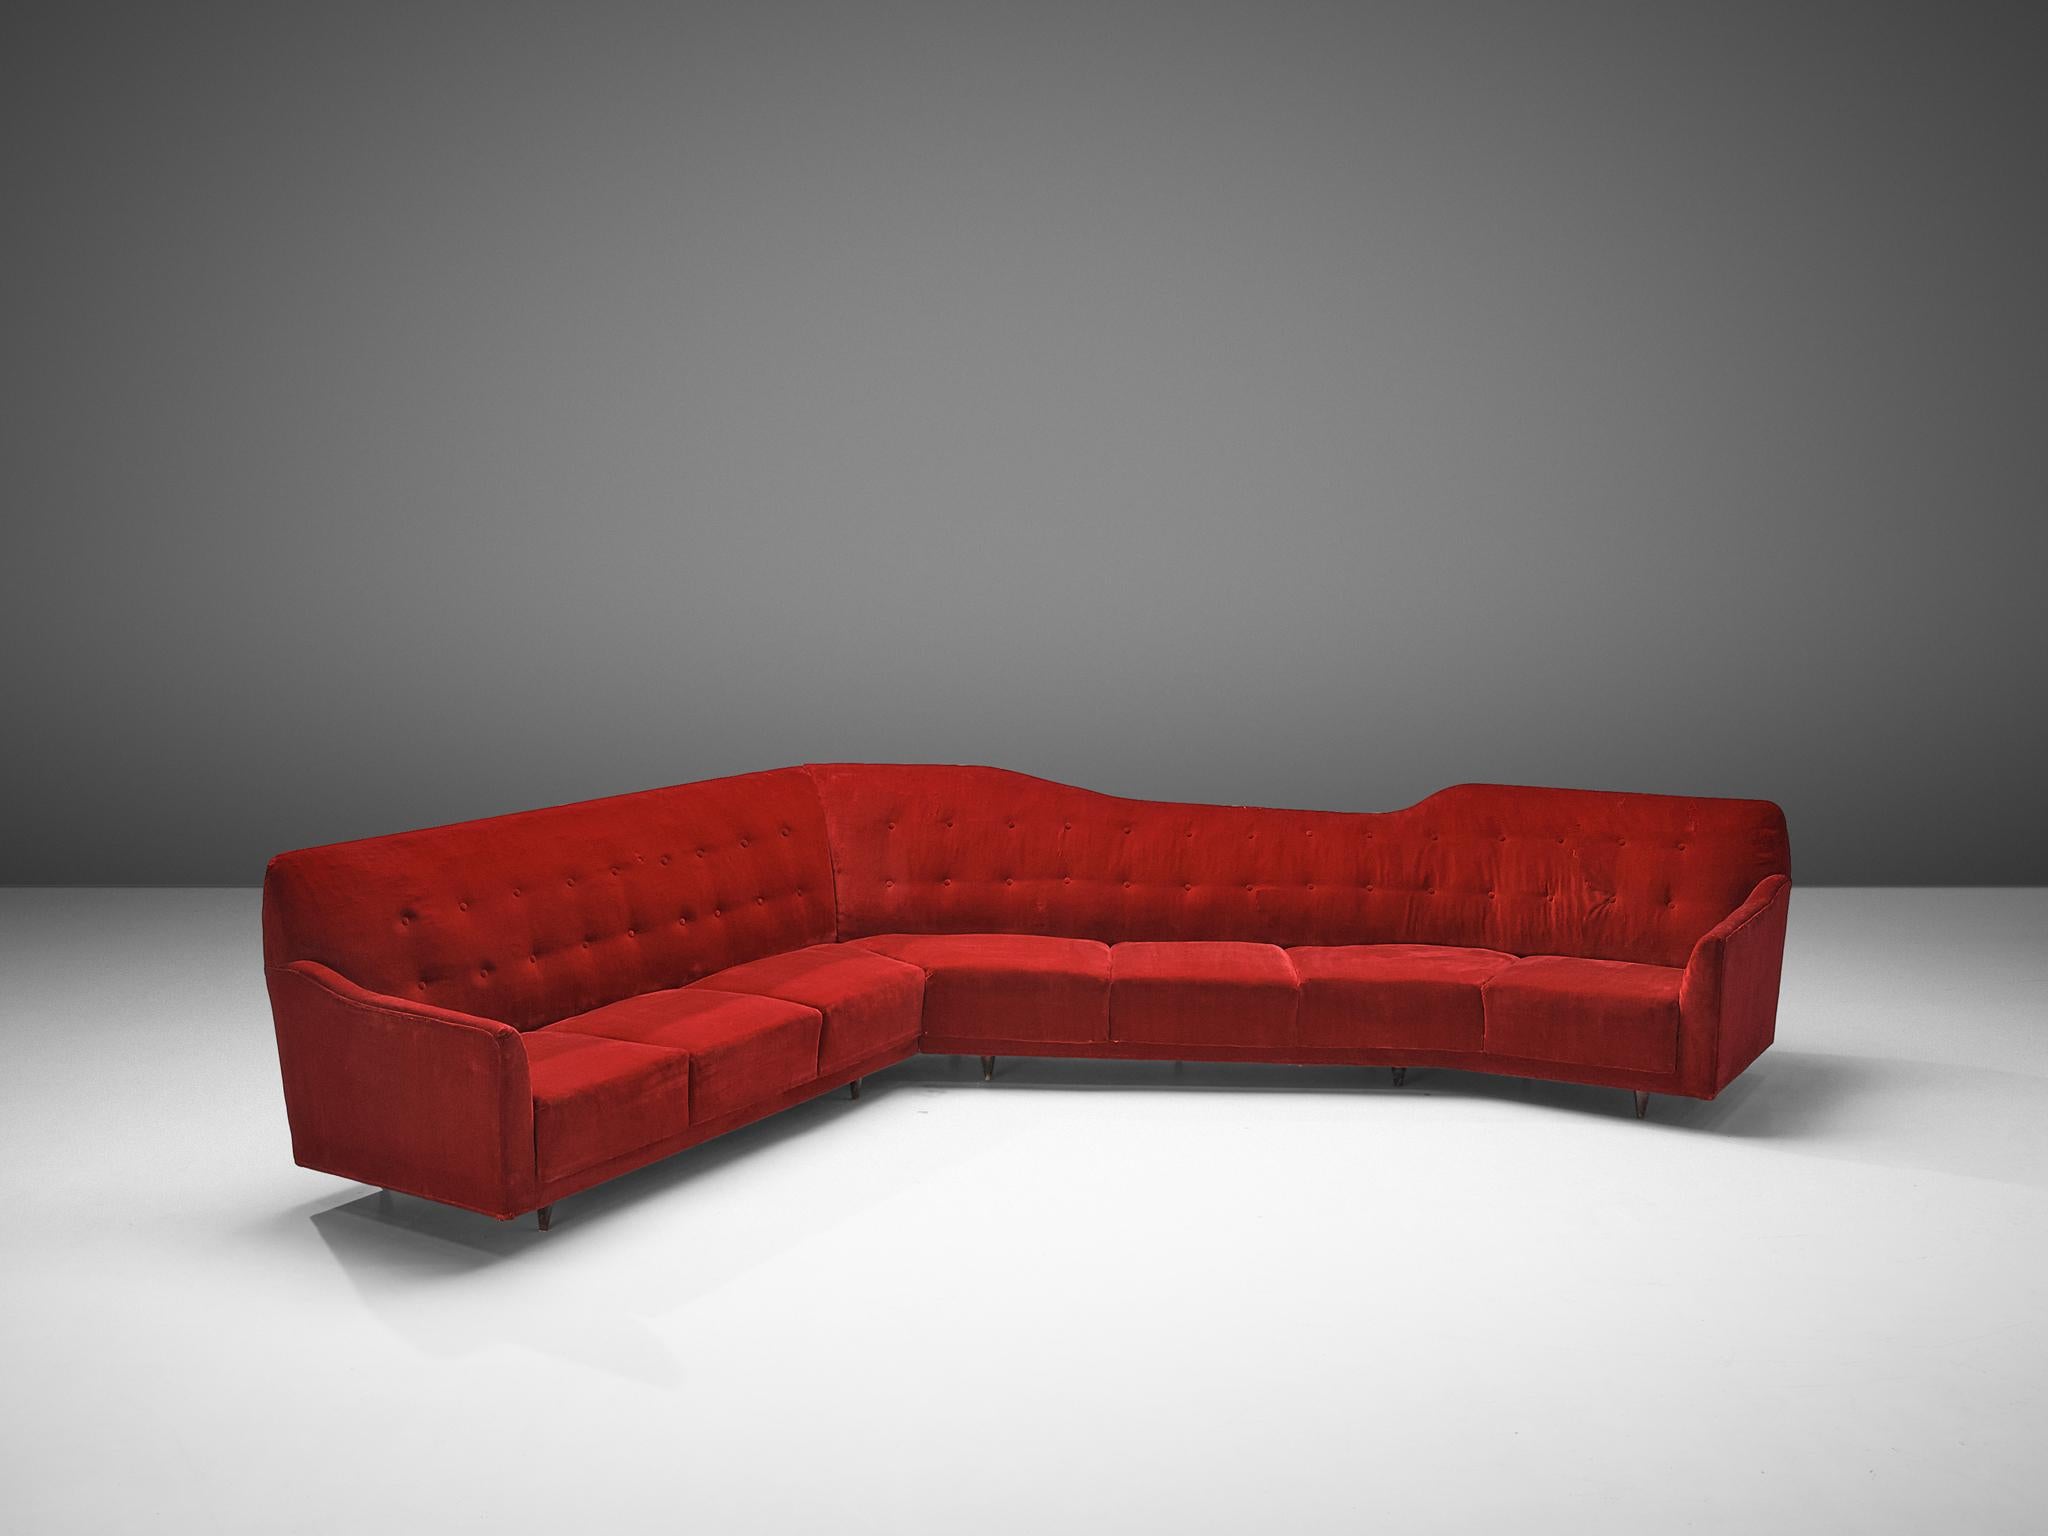 Sofa, Samt, Holz, Italien, 1950er Jahre

Schönes und sehr geräumiges Sofa aus den 1950er Jahren, hergestellt in Italien.  Dieses Ecksofa ist ein echter Blickfang mit allen Merkmalen des Mid-Modern-Designs. Das Sofa hat nicht nur eine interessante